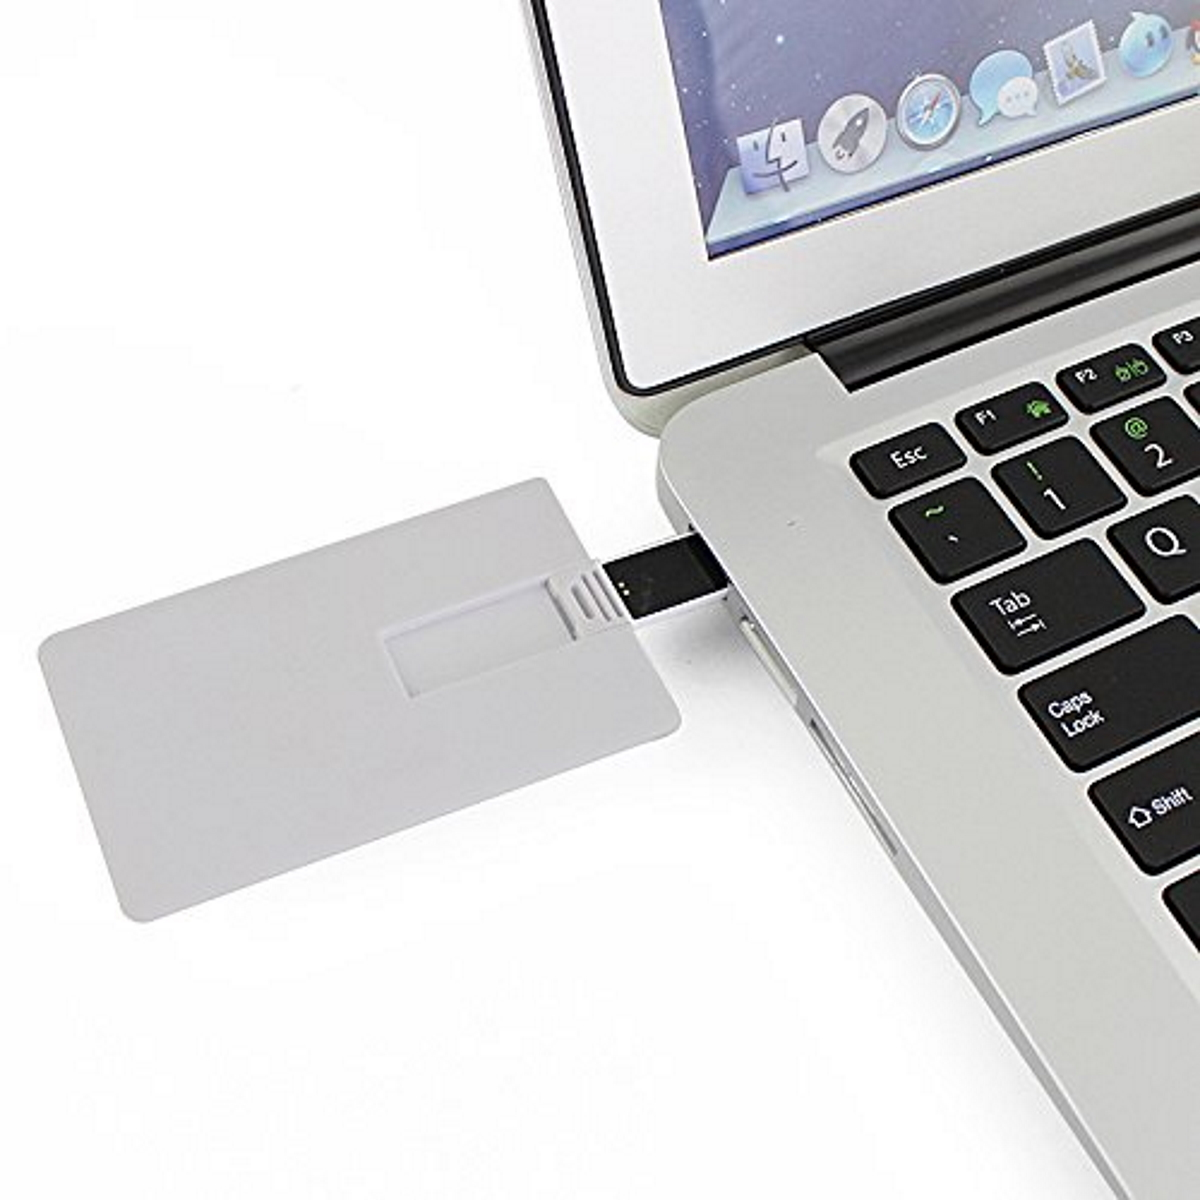 GB) GERMANY Kreditkarte ® 2 USB (Weiss, USB-Stick